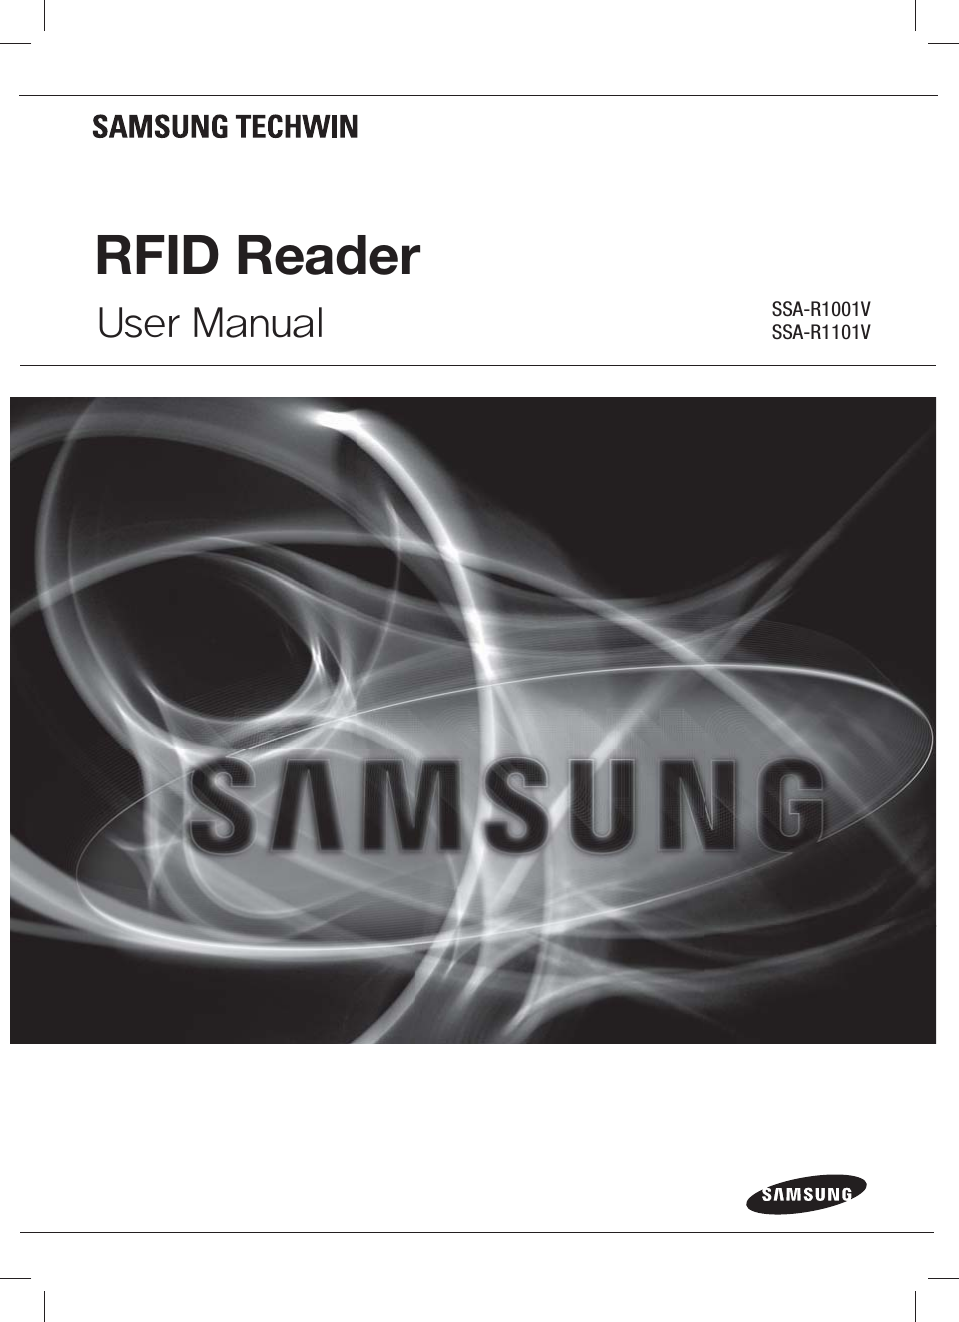 RFID ReaderUser Manual SSA-R1001VSSA-R1101V